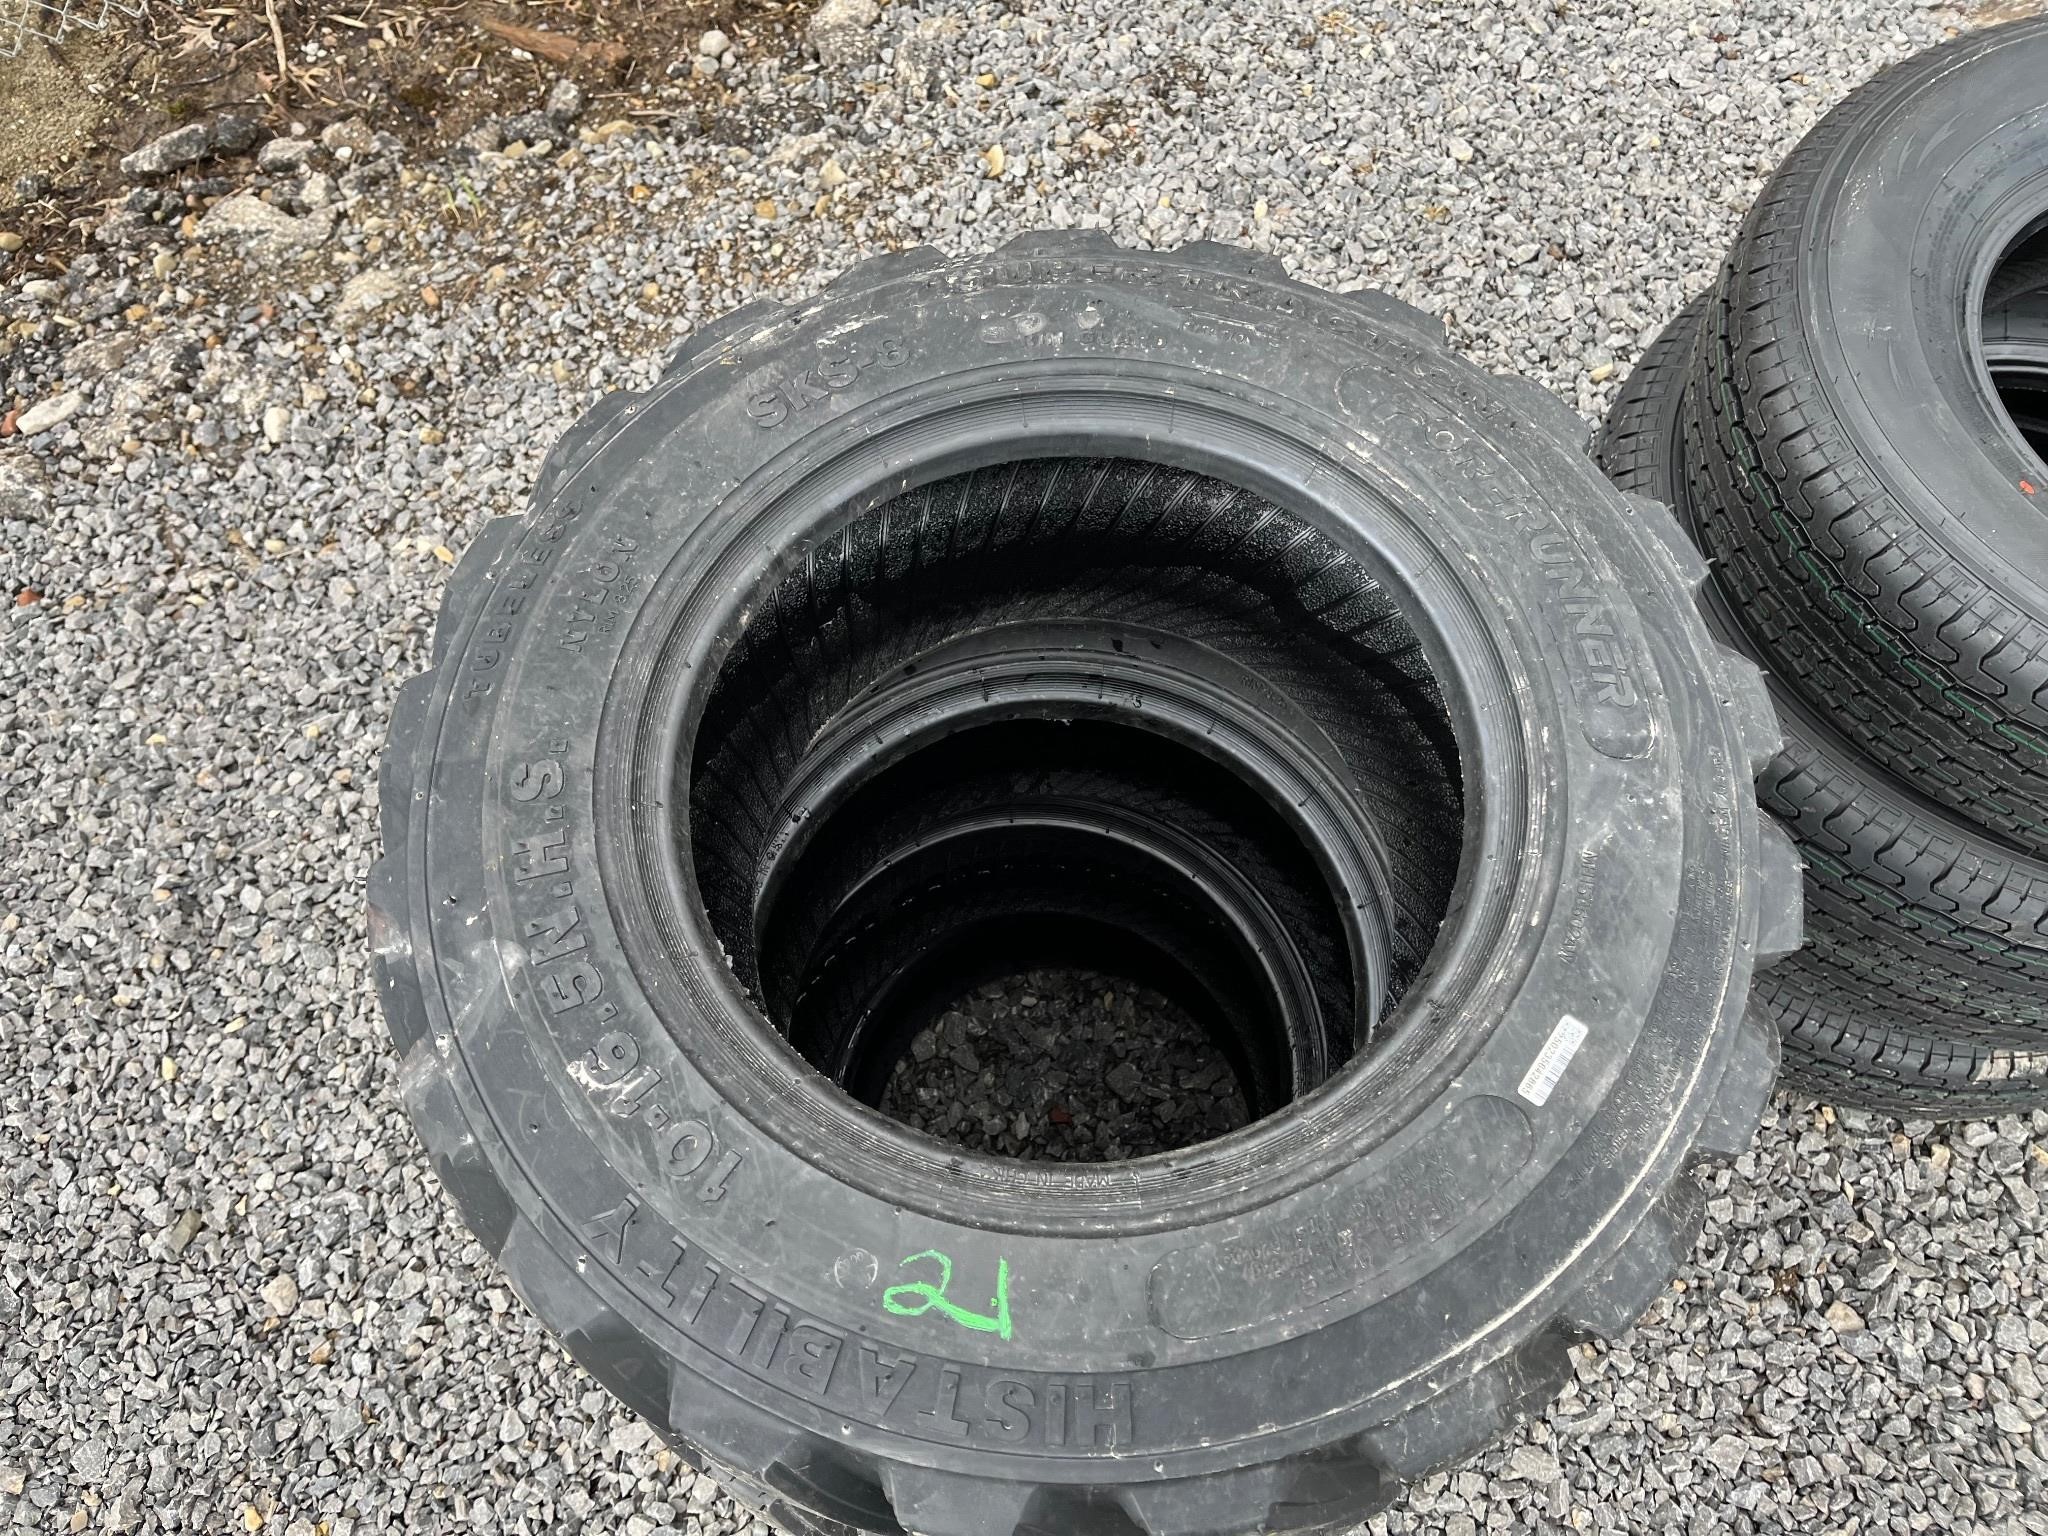 Quantity - 4 10-16.5 skid steer tires